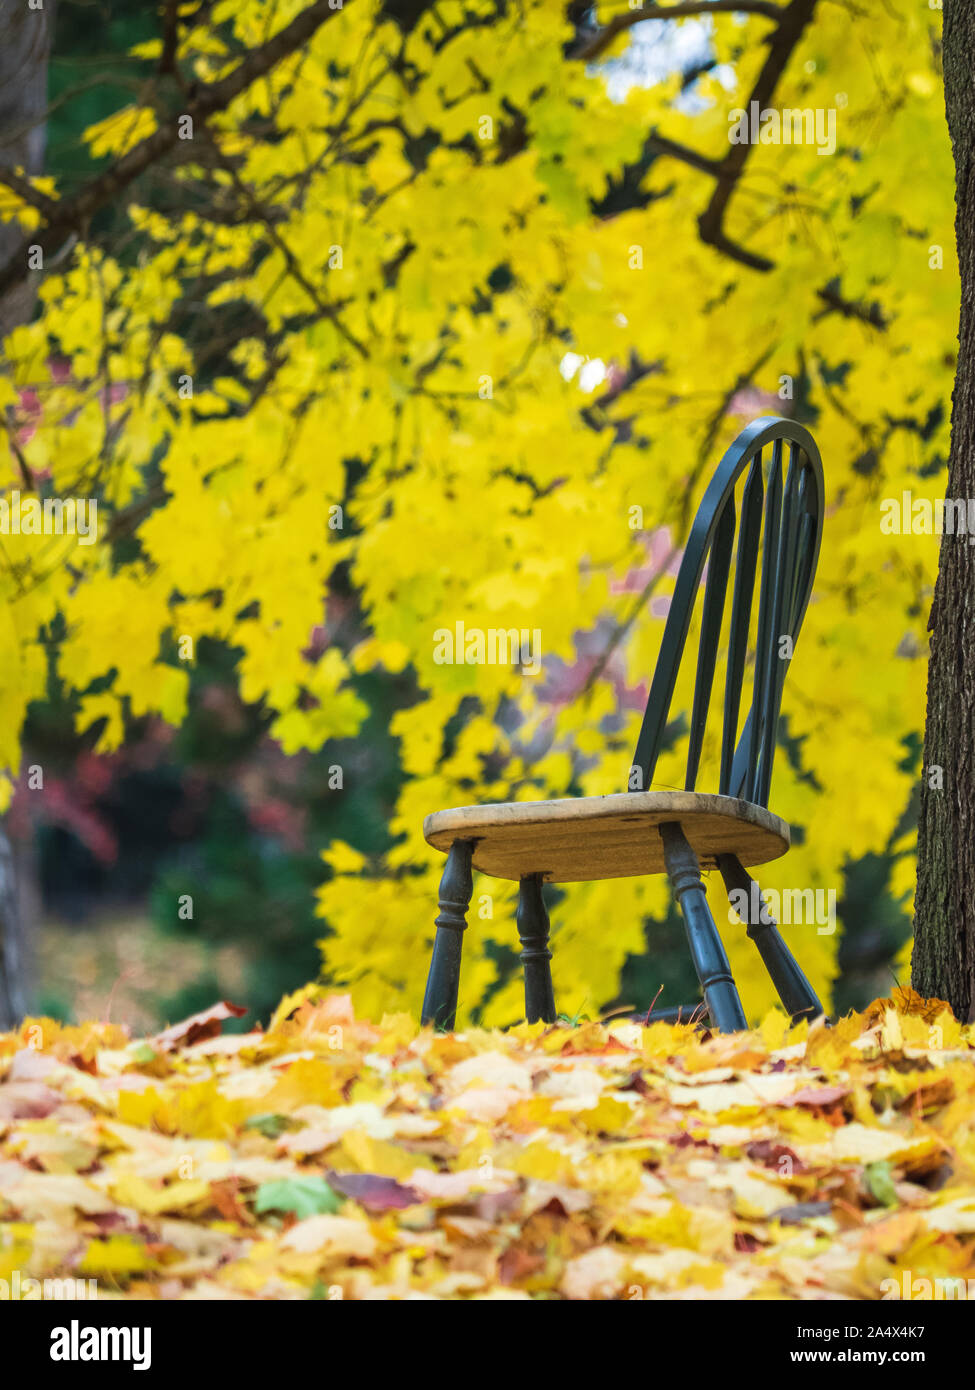 Einsame Holz grün Stuhl stehend außerhalb im Herbst, wenn die gelben Blätter stapeln sich um ihn herum. Stockfoto